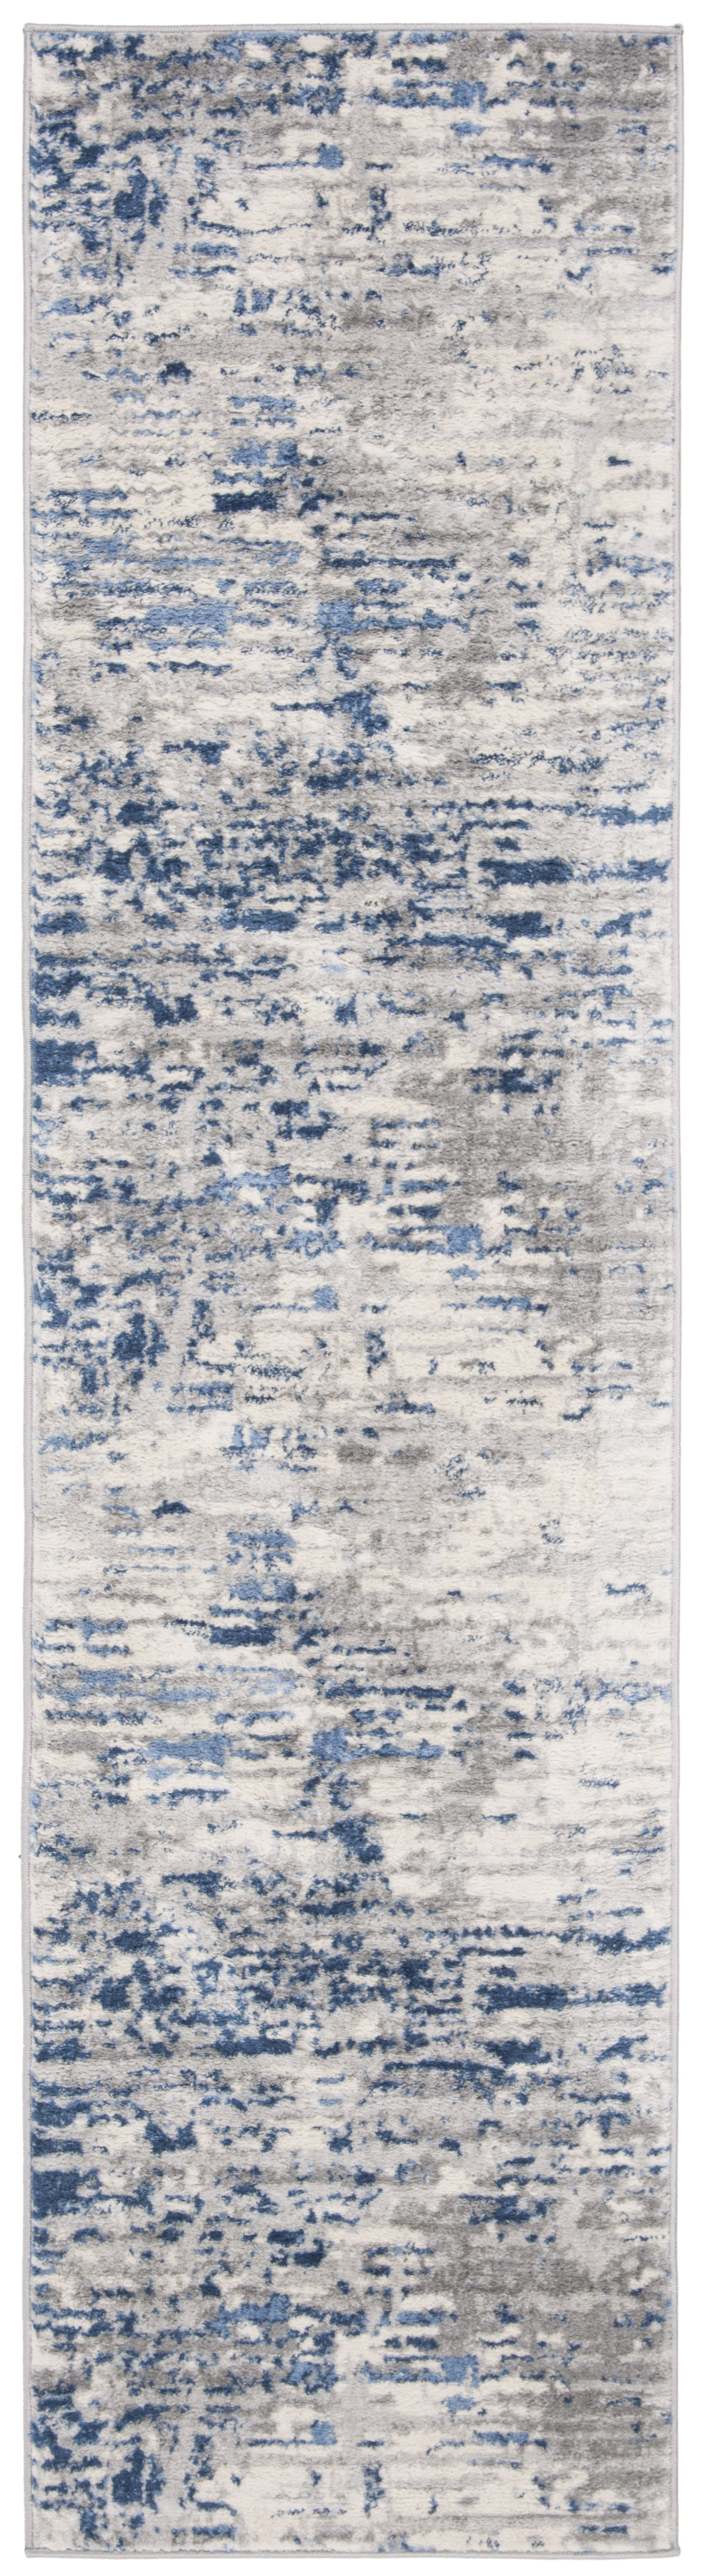 Tapis de salon interieur en  ivoire & bleu, 61 x 244 cm